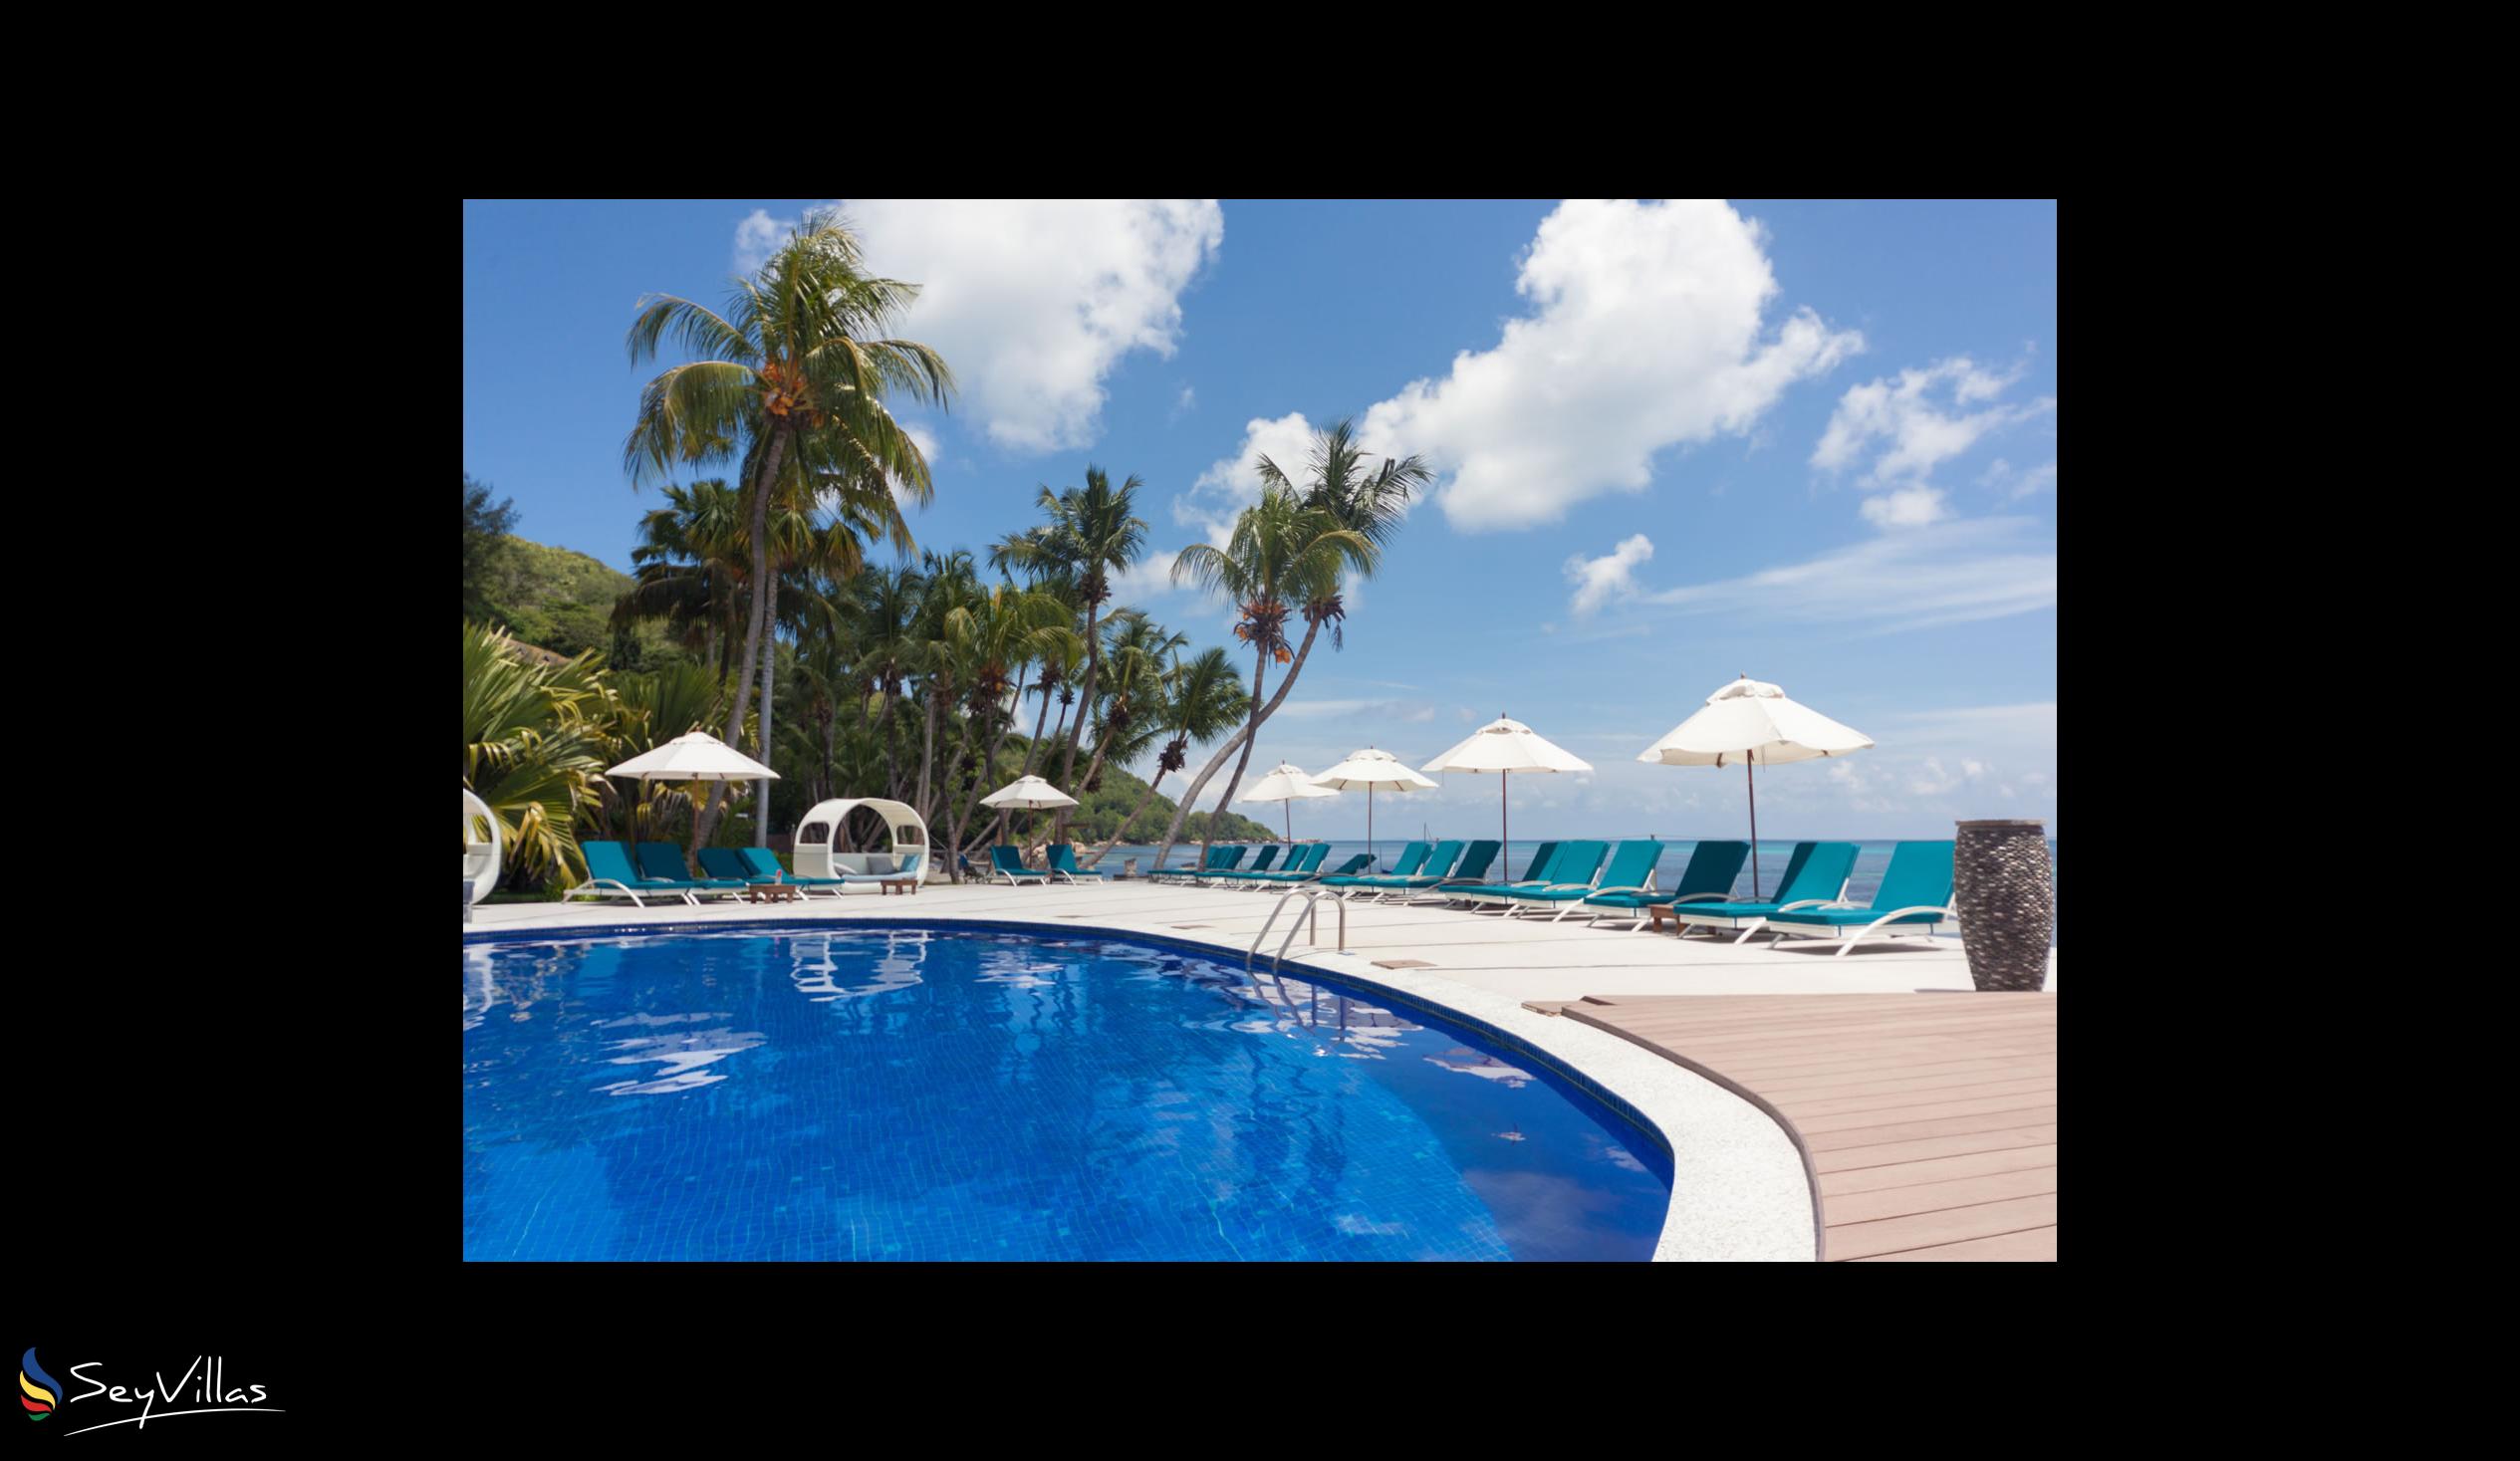 Foto 16: Coco de Mer & Black Parrot Suites - Aussenbereich - Praslin (Seychellen)